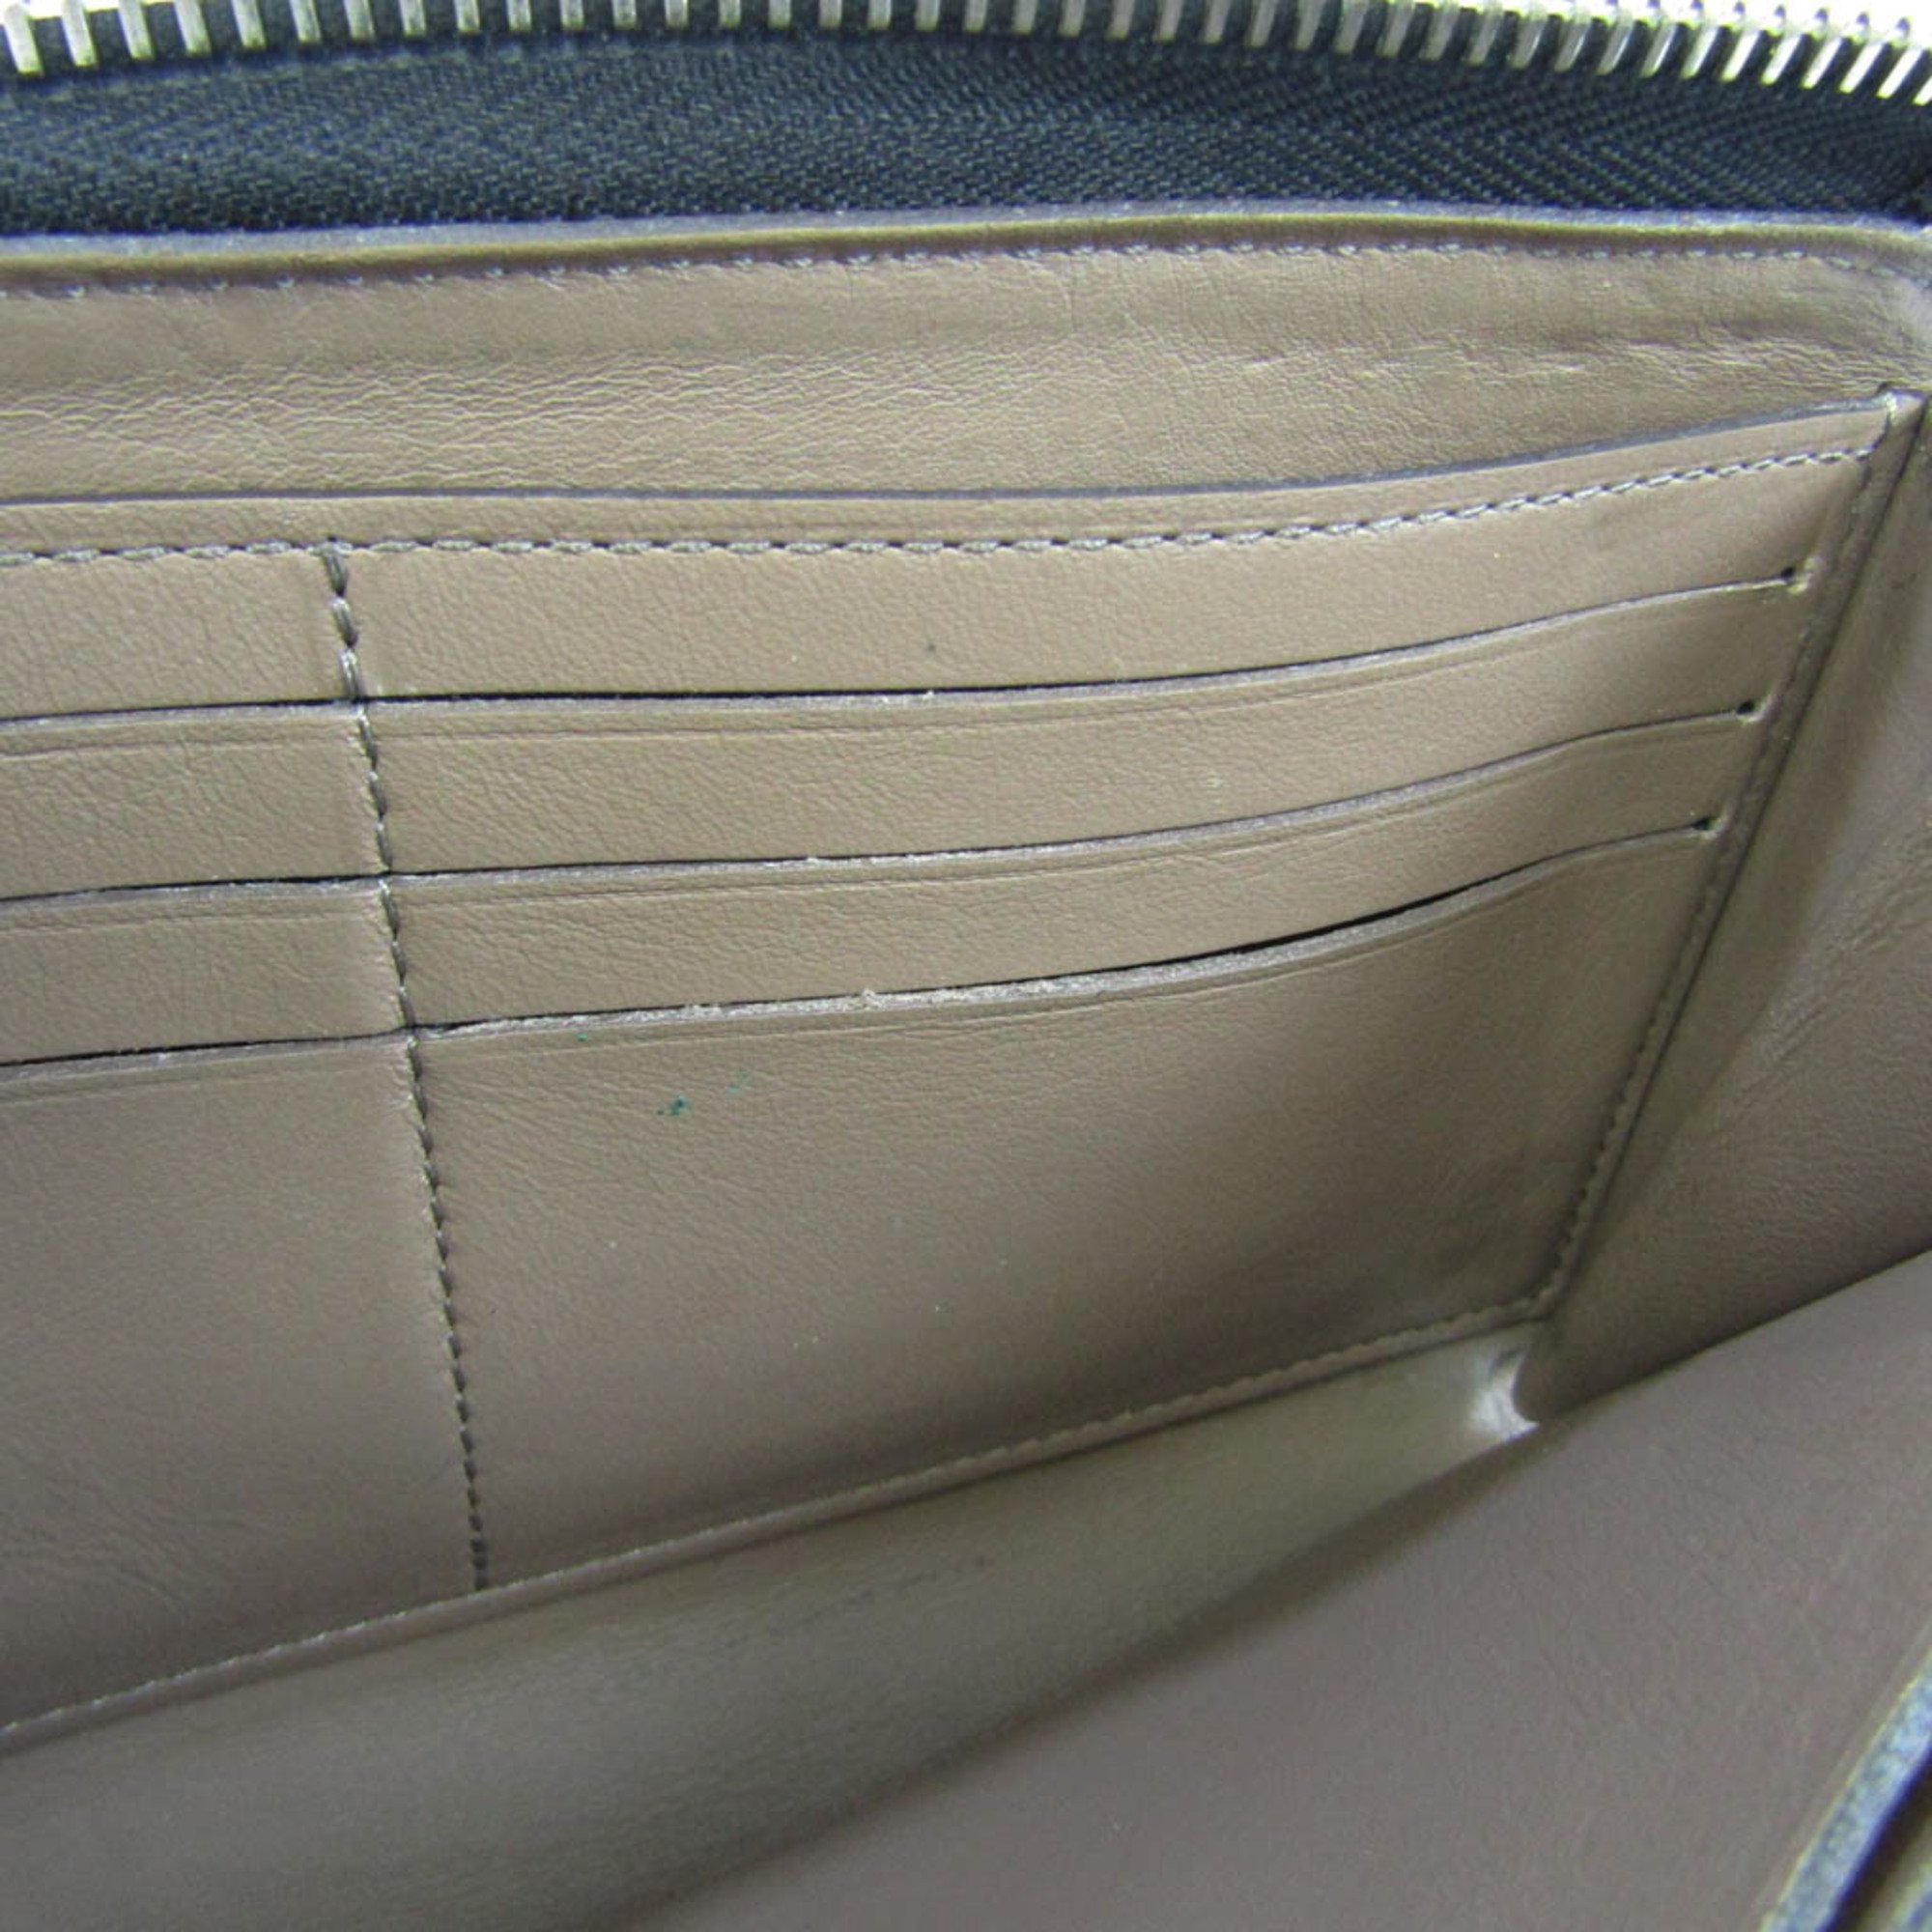 Louis Vuitton Portefeuille Comet M60146 Women's Veau Cachemire Leather Long Wallet (bi-fold) Noir